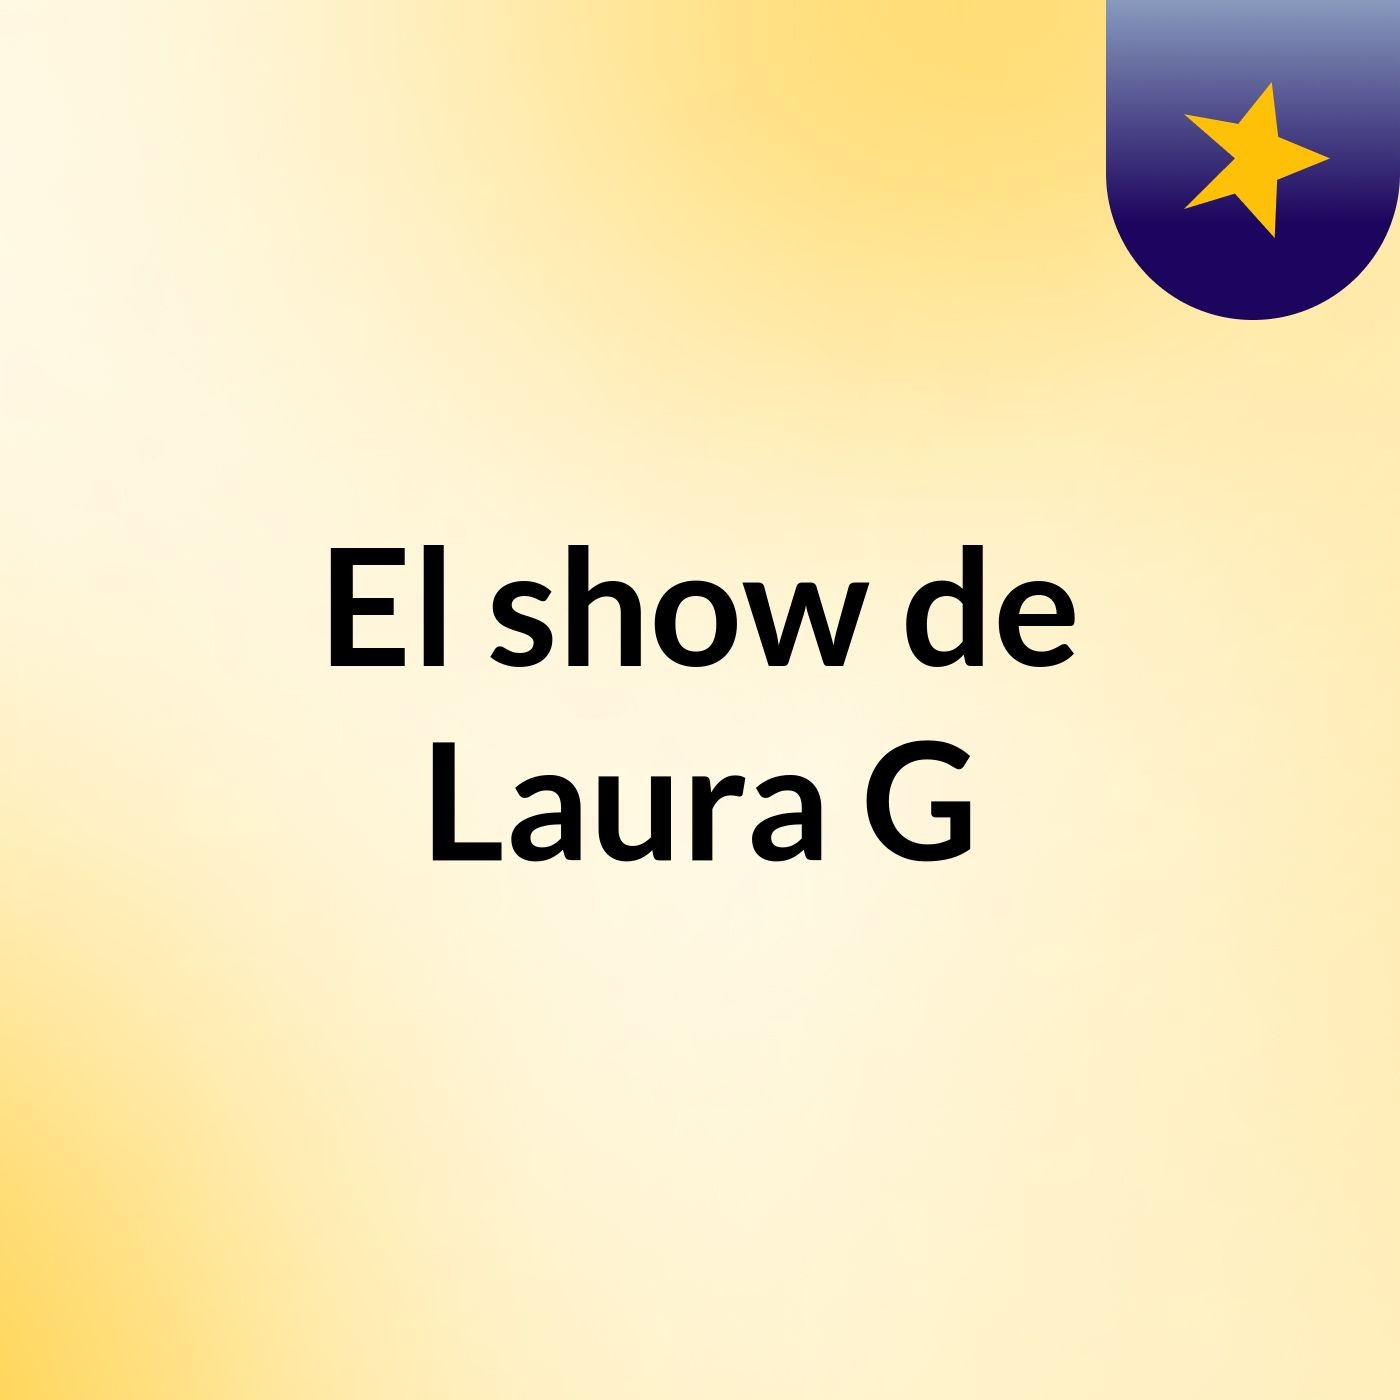 El show de Laura G